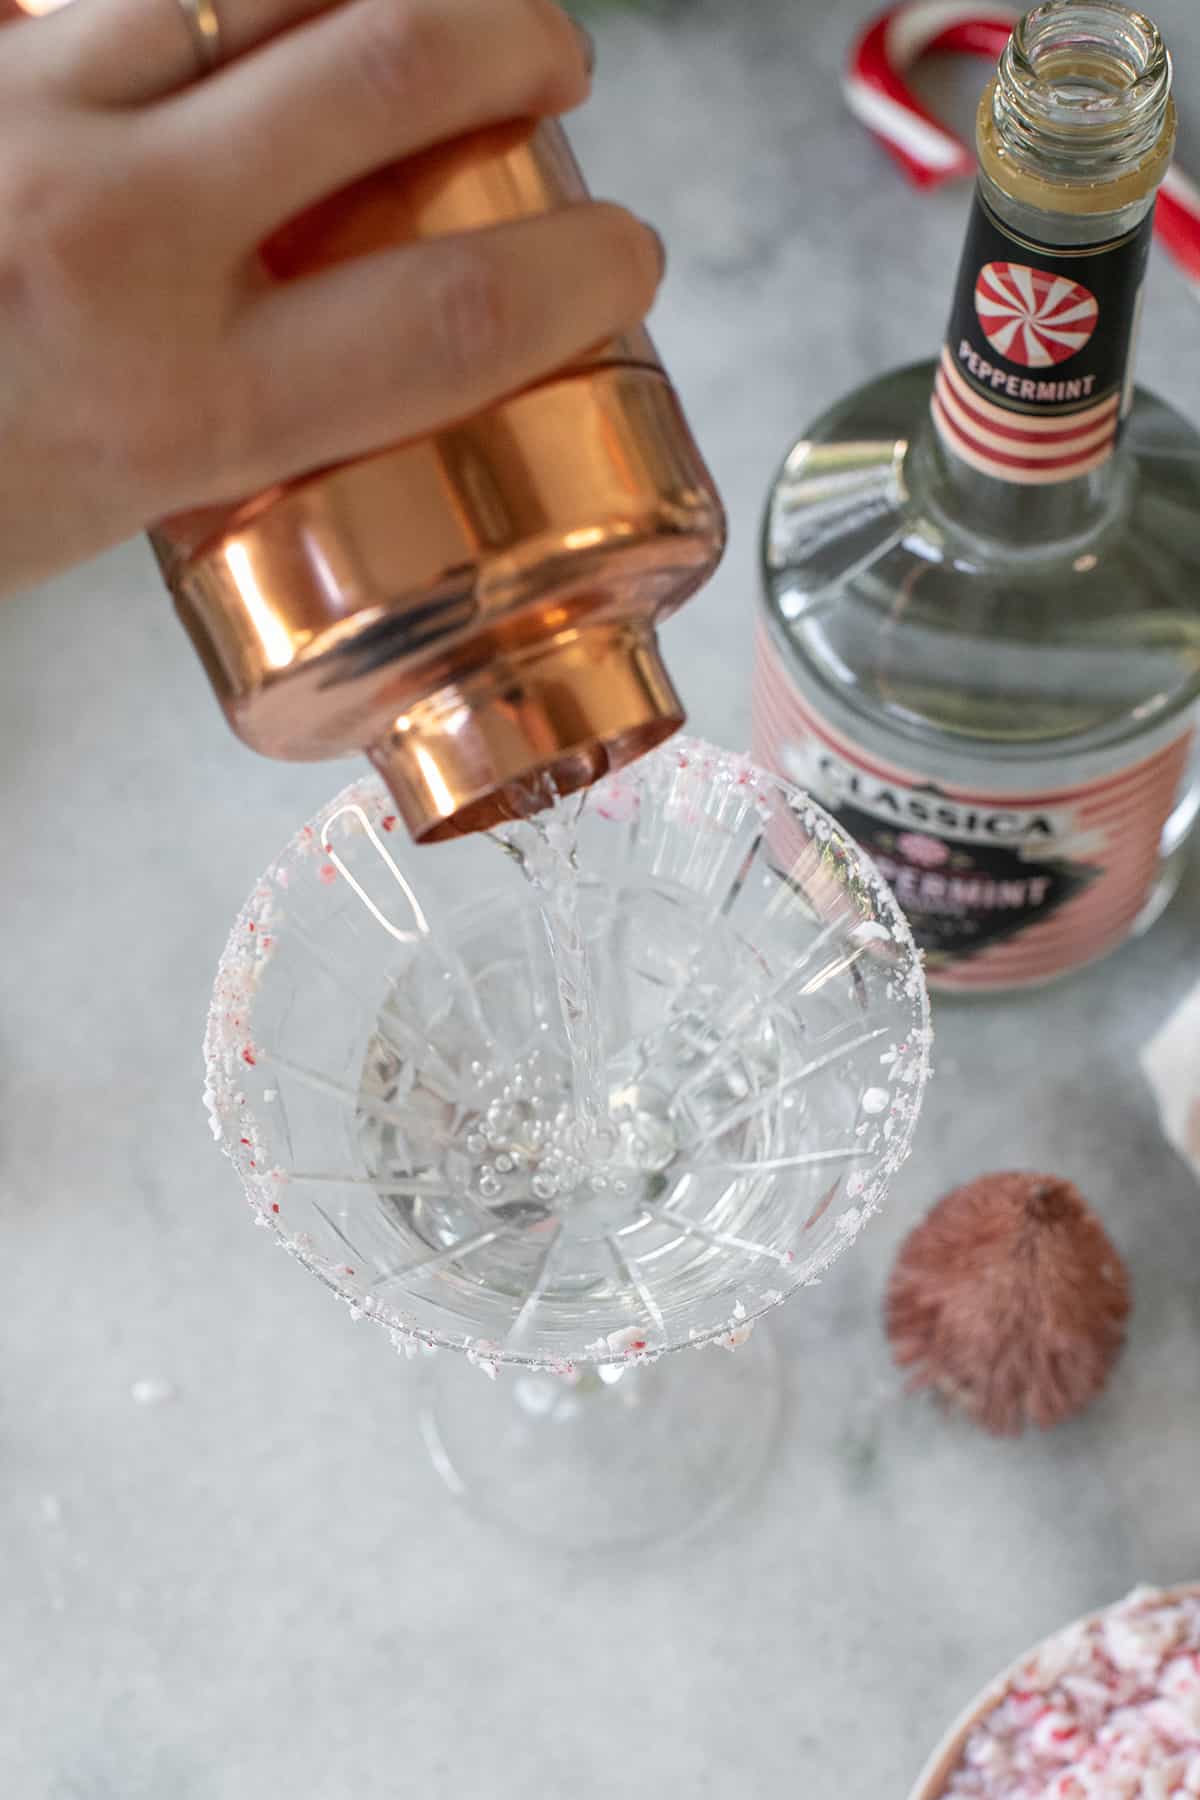 strain peppermint martini into a martini glass